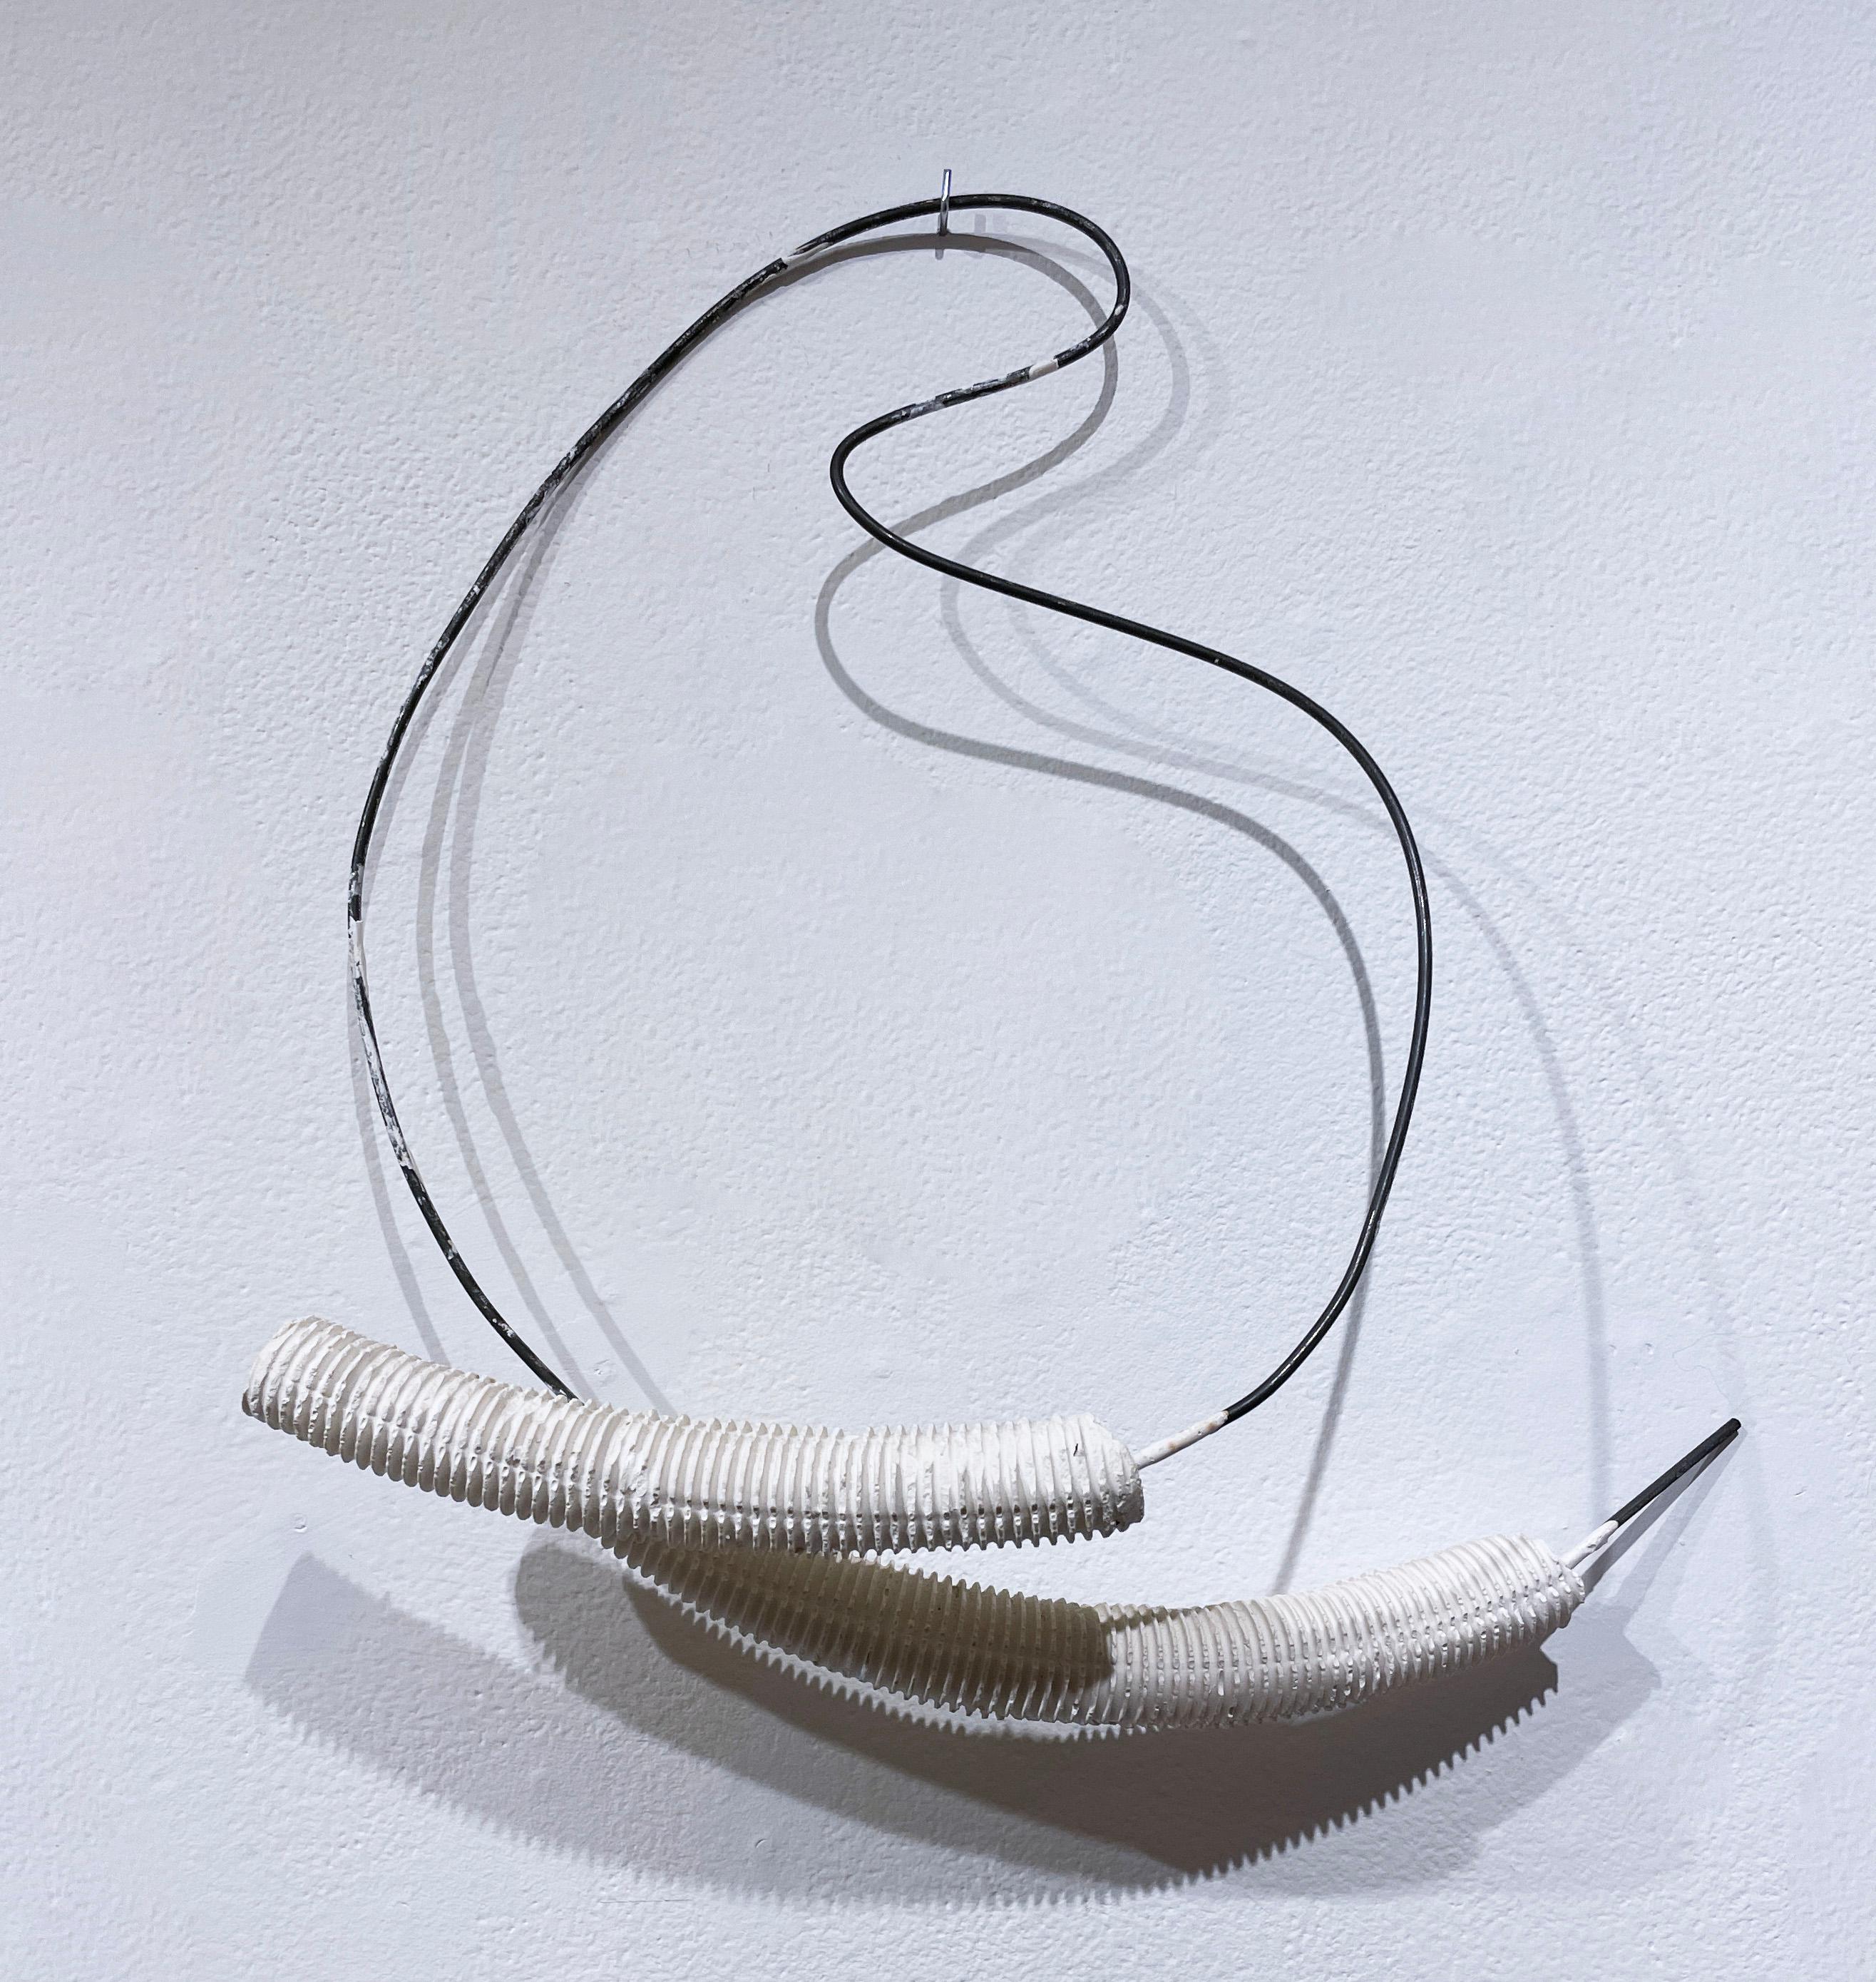 Forme en fil métallique avec pieds croisés (2021), sculpture abstraite hydrocale blanche, métal - Abstrait Sculpture par Dena Paige Fischer